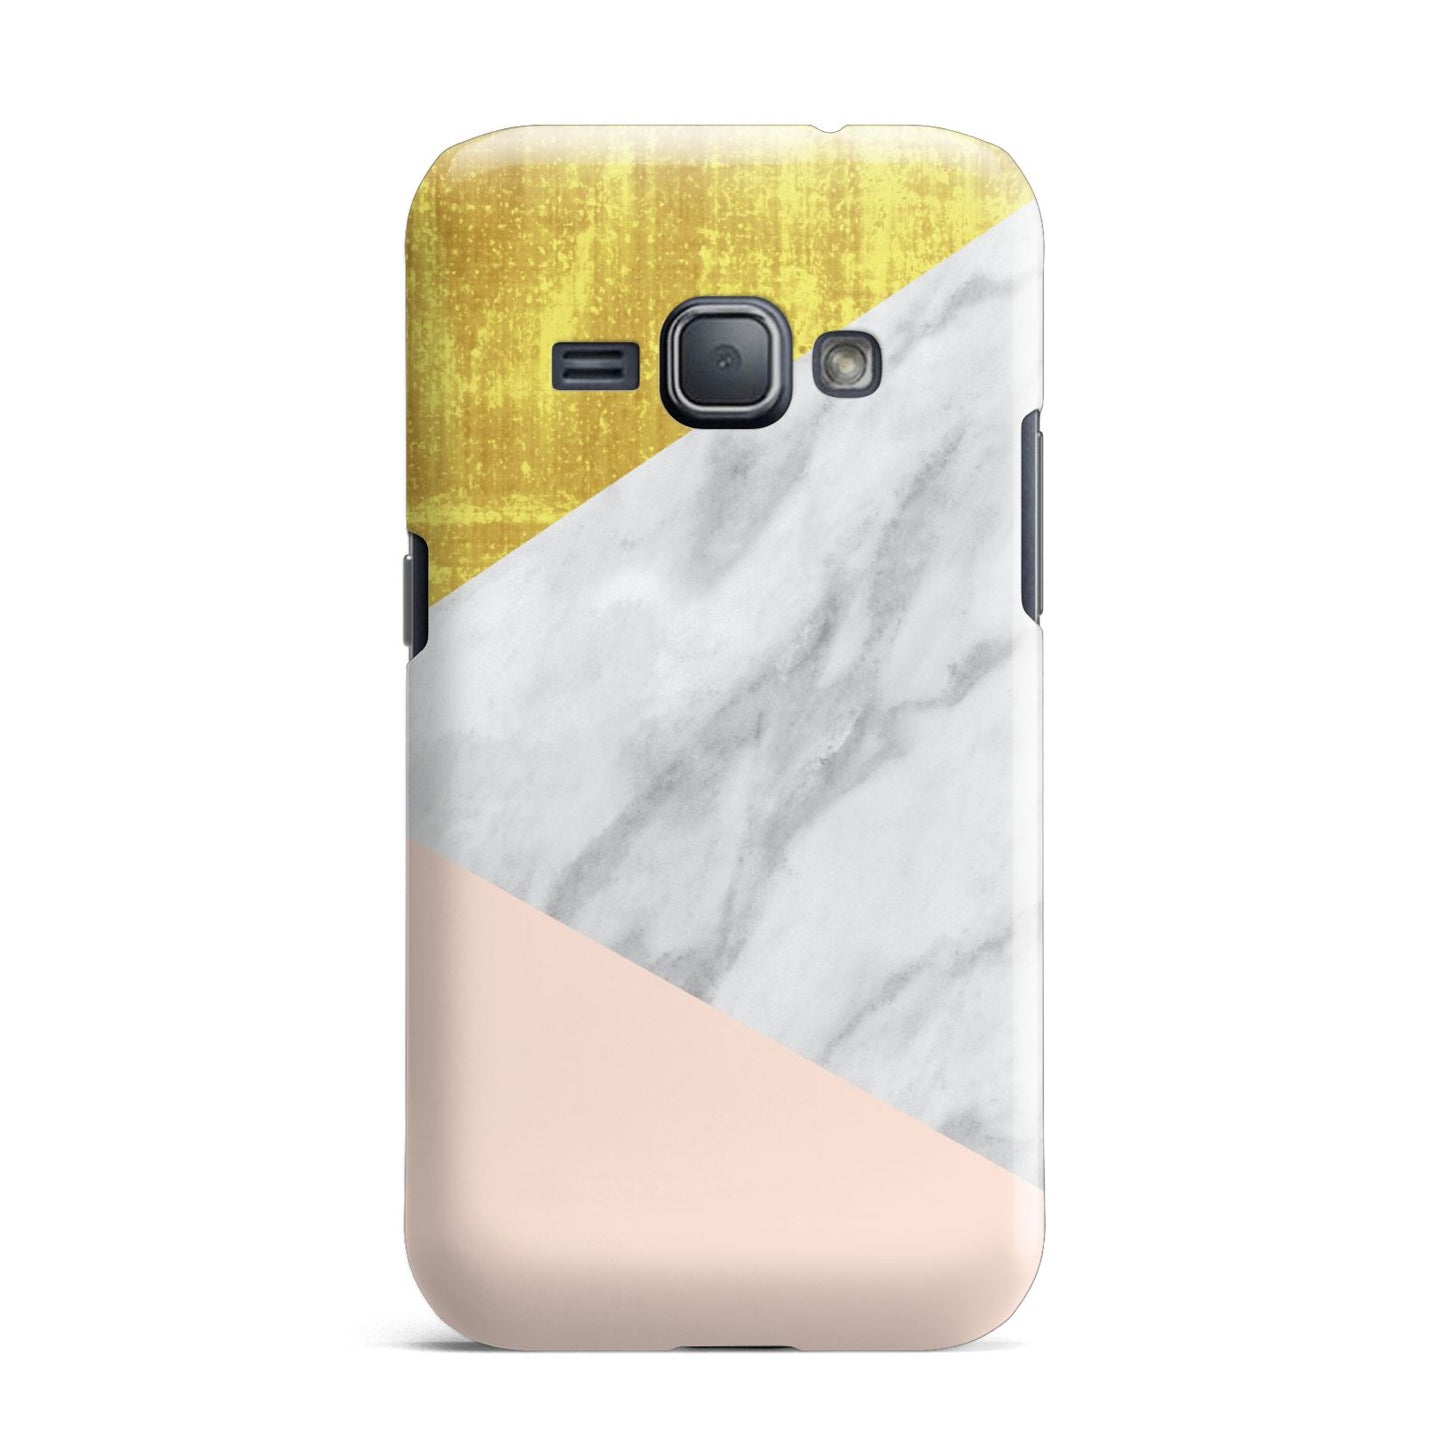 Marble White Gold Foil Peach Samsung Galaxy J1 2016 Case